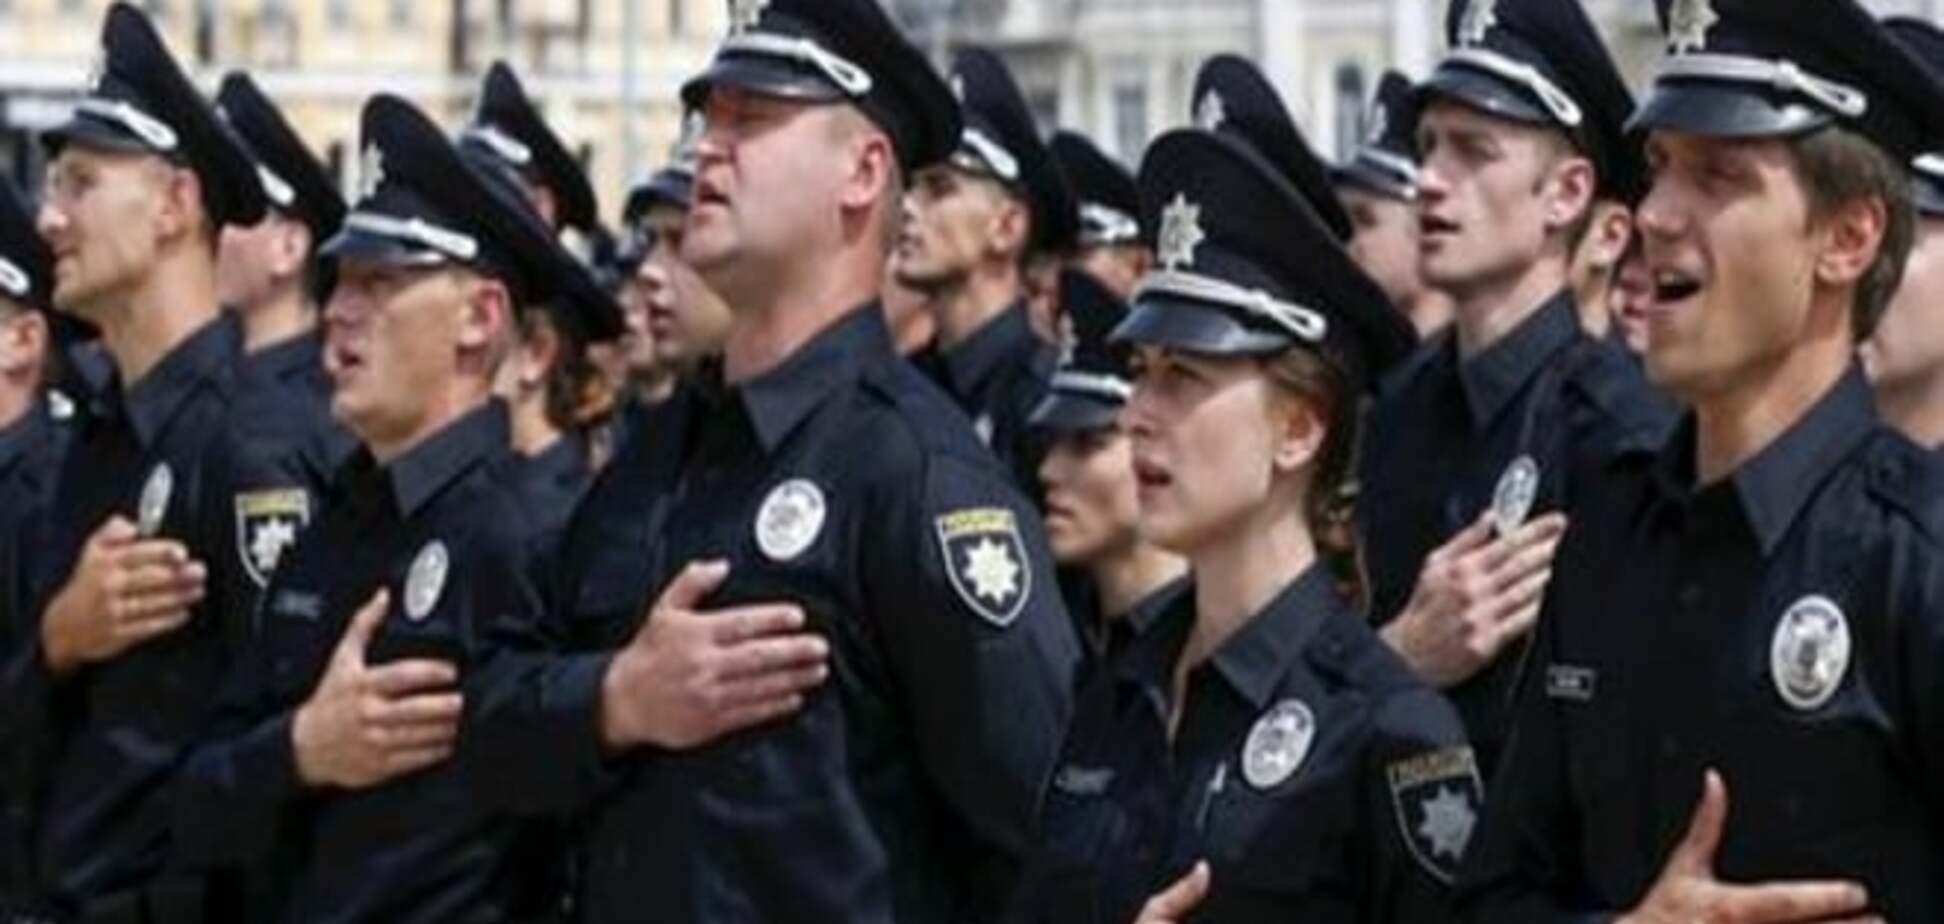 Первый месяц украинской полиции: успешный старт?